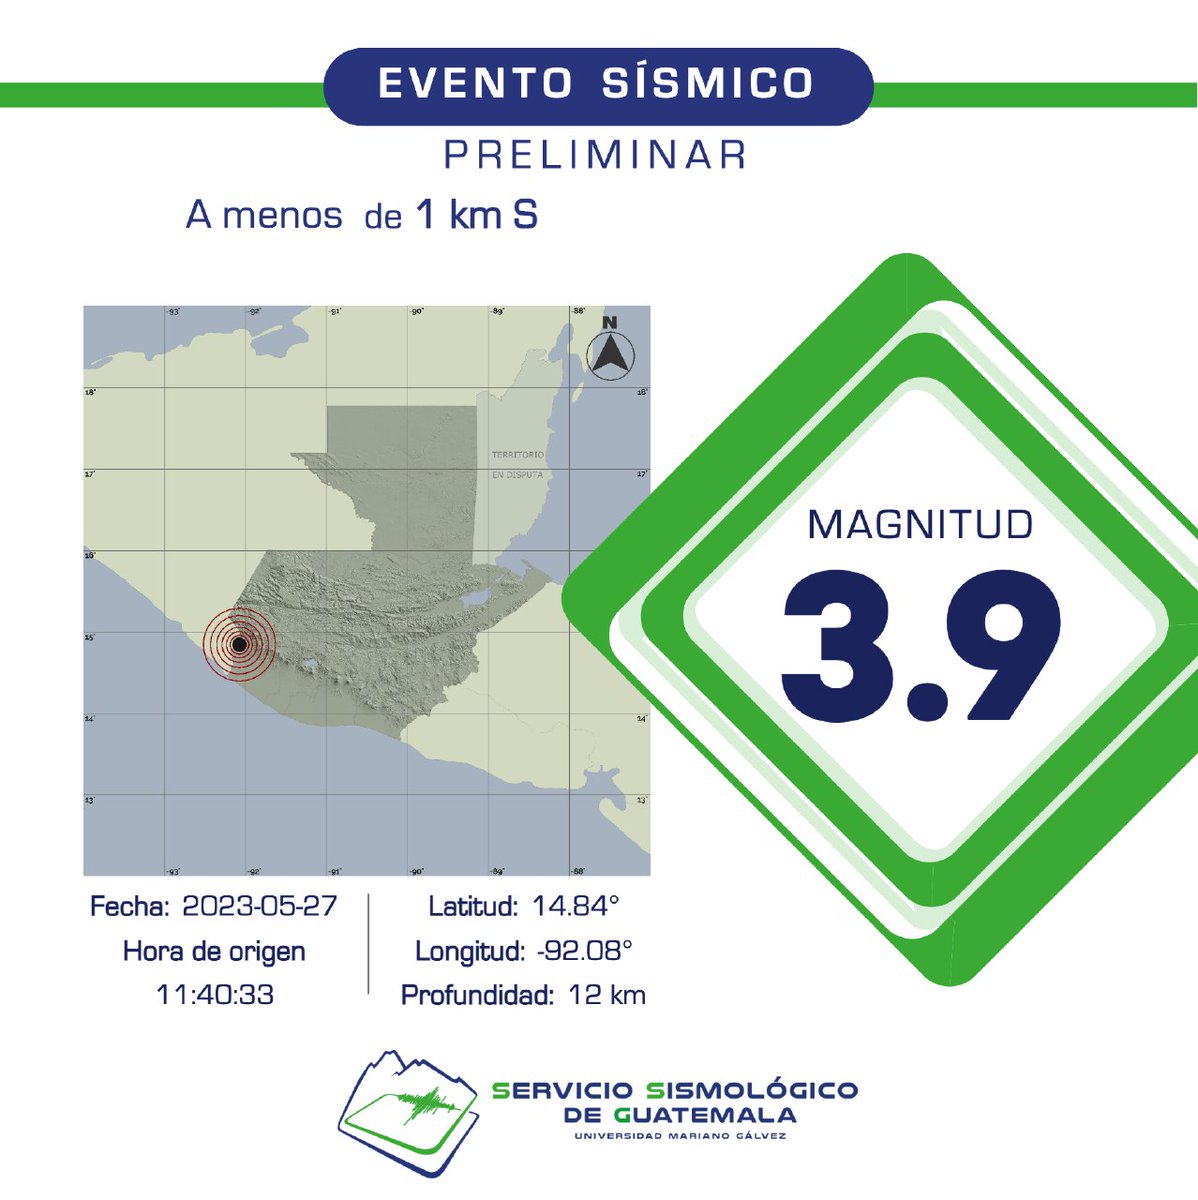 PRELIMINAR
Sismo registrado a menos de 1 km S de Catarina, Guatemala. #Temblor #TemblorGT #Sismo #SismoGT